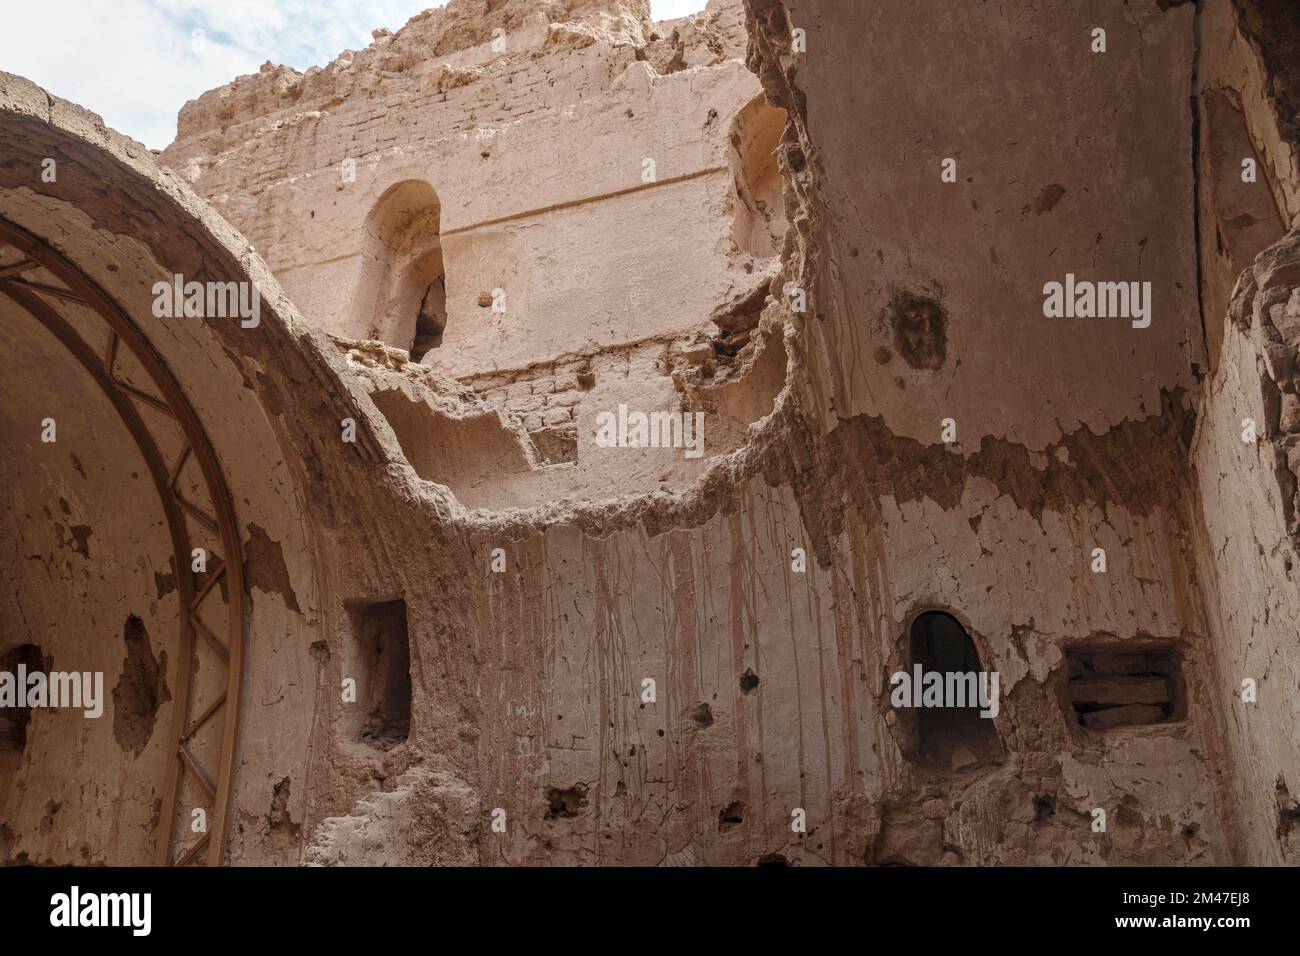 The Monastery of Anba Hatre, also known as St Simeon, Aswan, Egypt Stock Photo